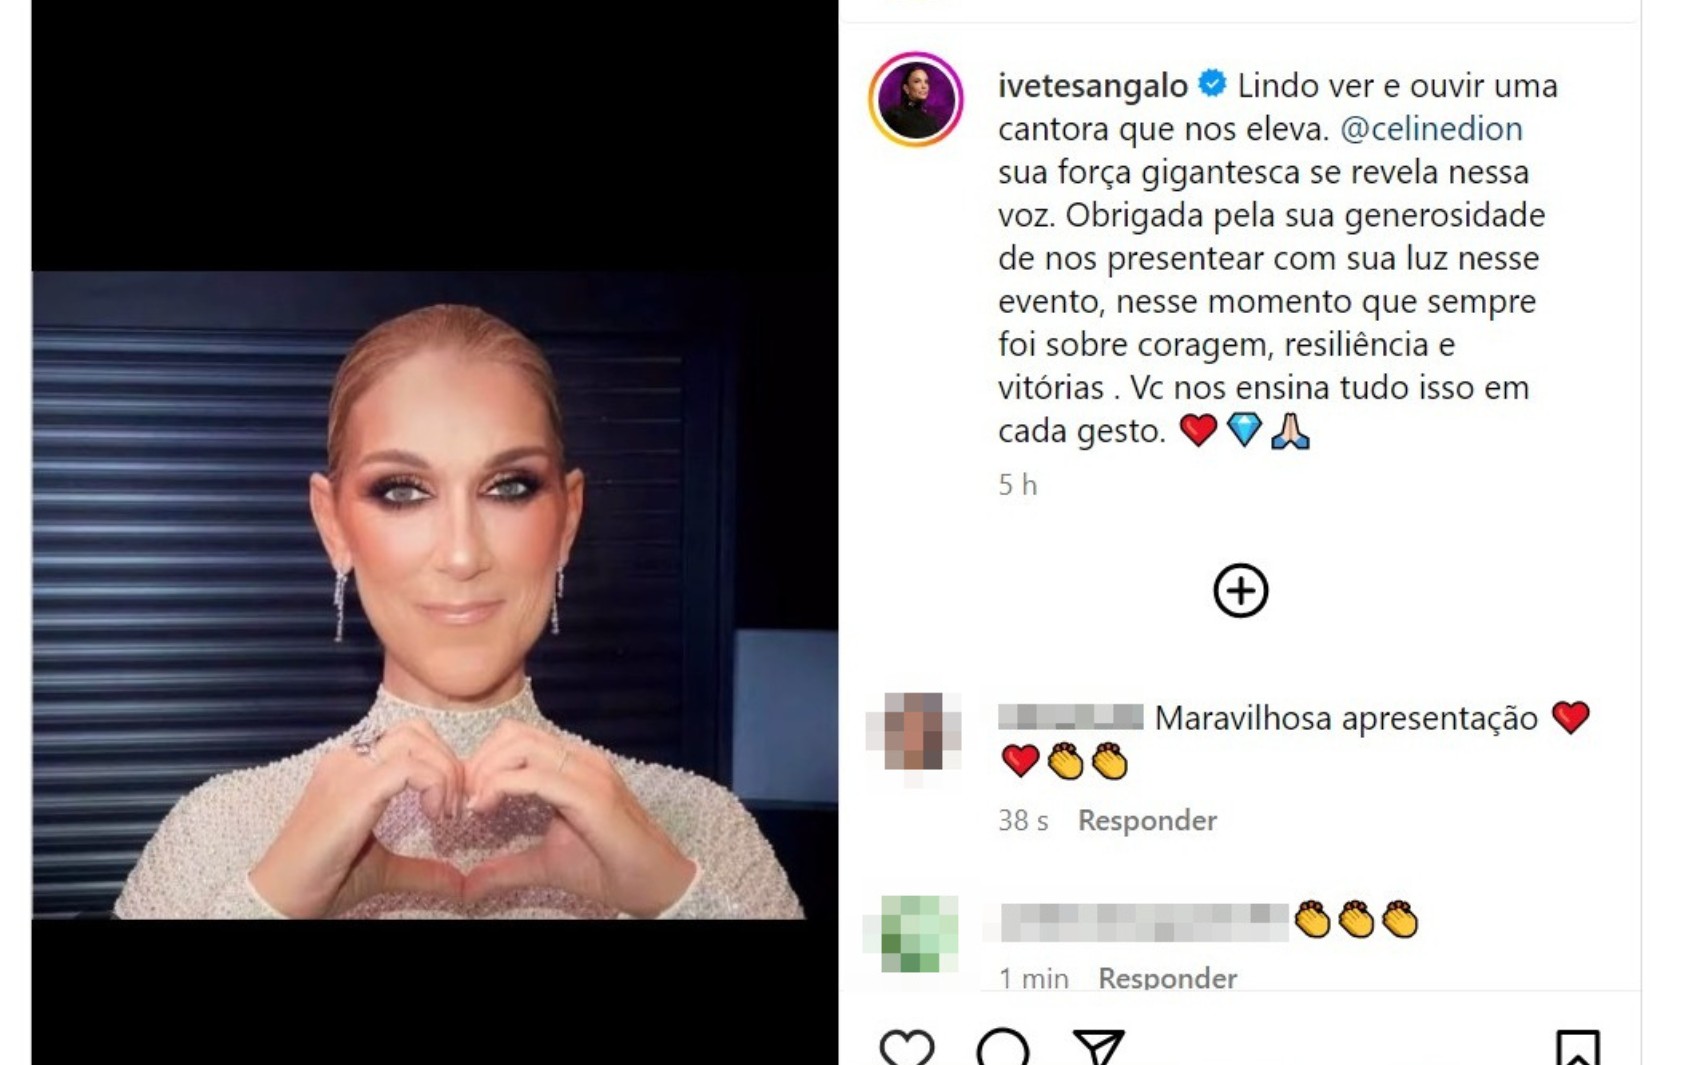 Ivete Sangalo reage a apresentação emocionante de Céline Dion na abertura das Olimpíadas: 'força gigantesca se revela nessa voz'